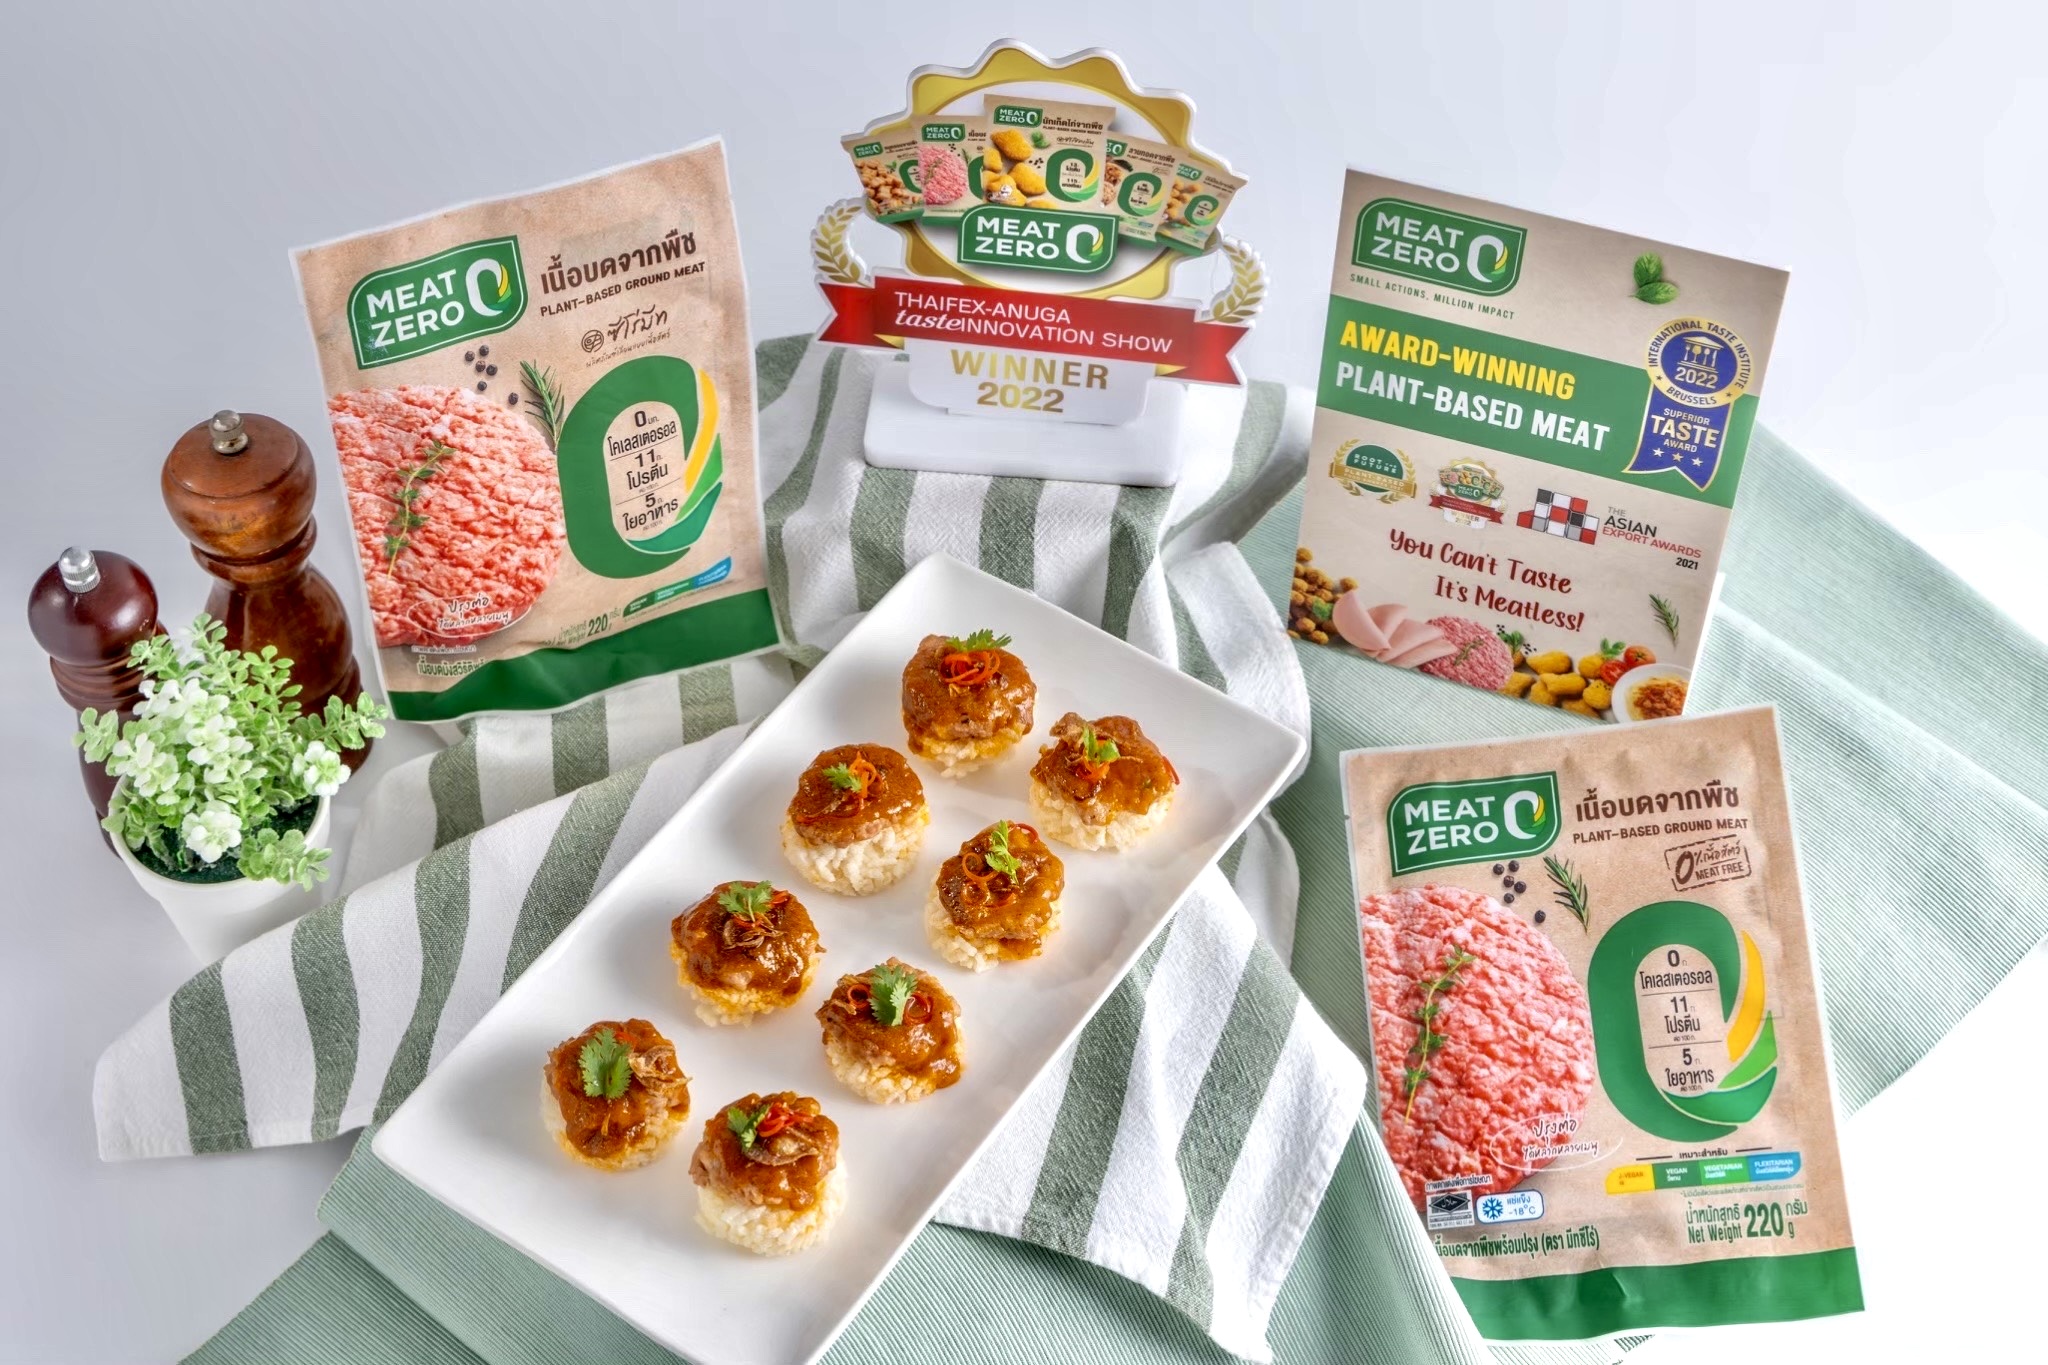 “Meat Zero” ผลิตภัณฑ์เนื้อจากพืช ทางเลือกเพื่อสุขภาพที่ดีช่วงเทศกาลกินเจ